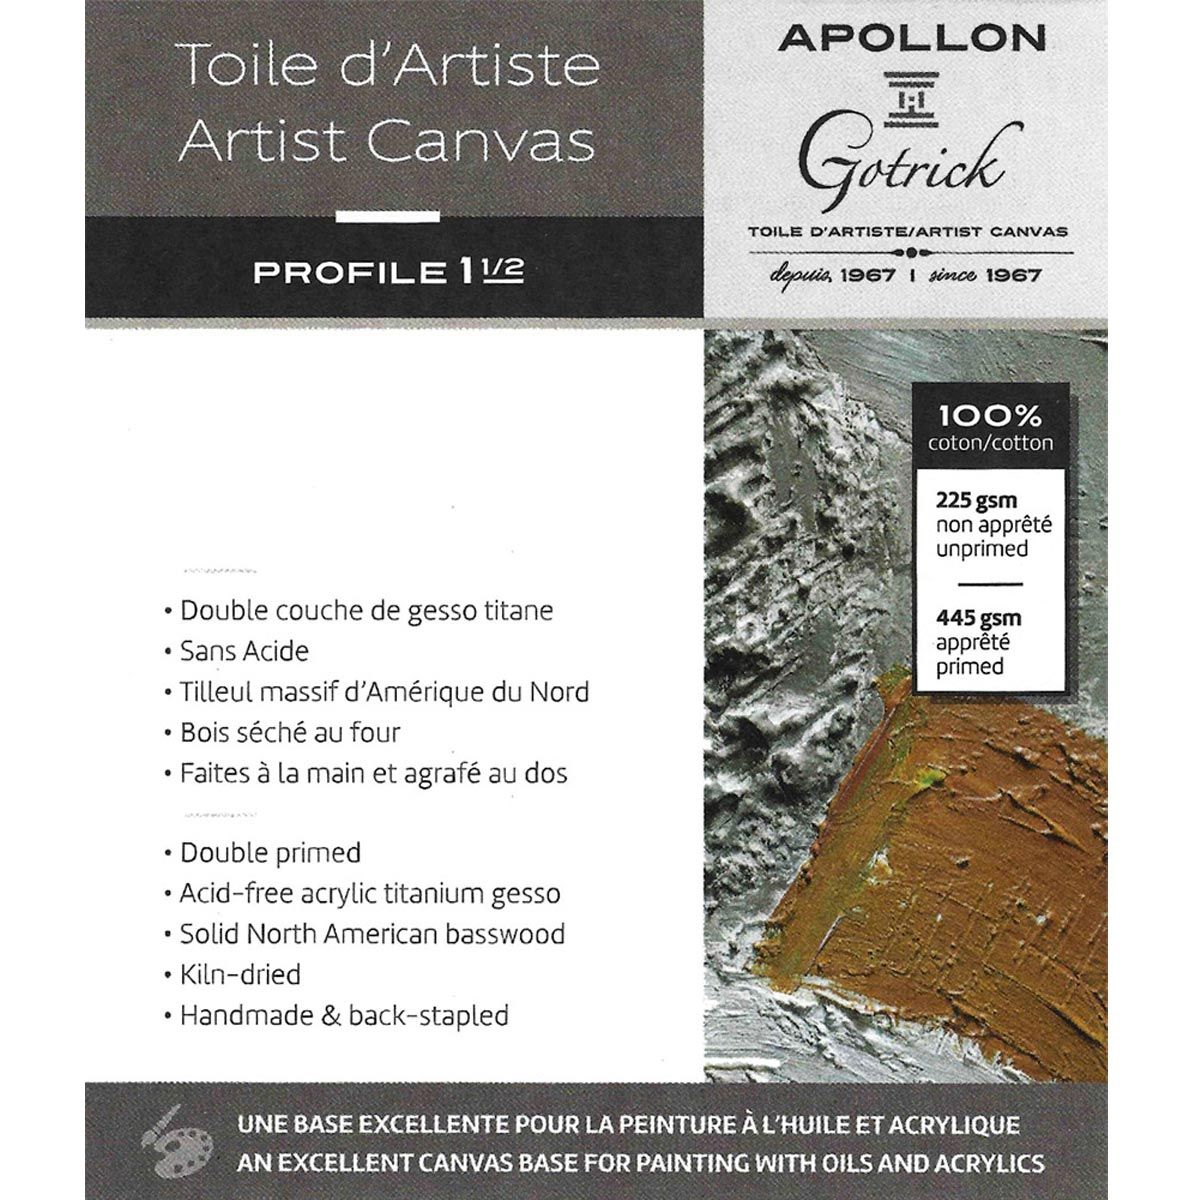 Apollon Gotrick Gallery Artist Canvas Profile 1½" - 18" x 48"